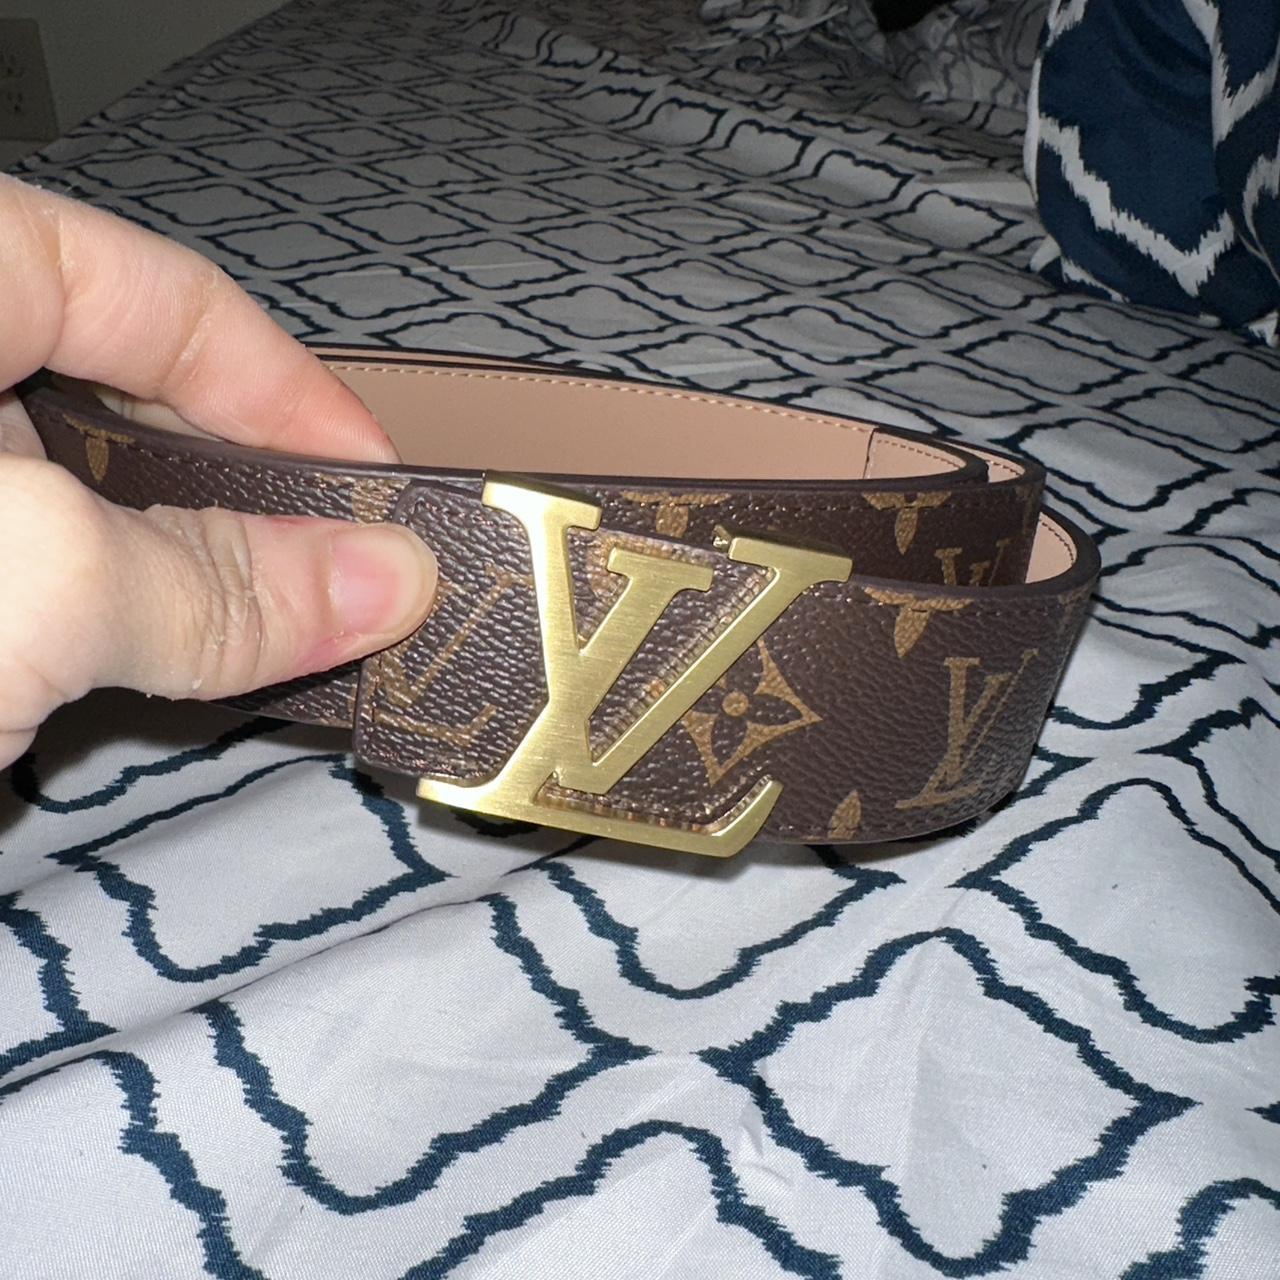 Louis Vuitton Belt Size 55. No box since it was - Depop